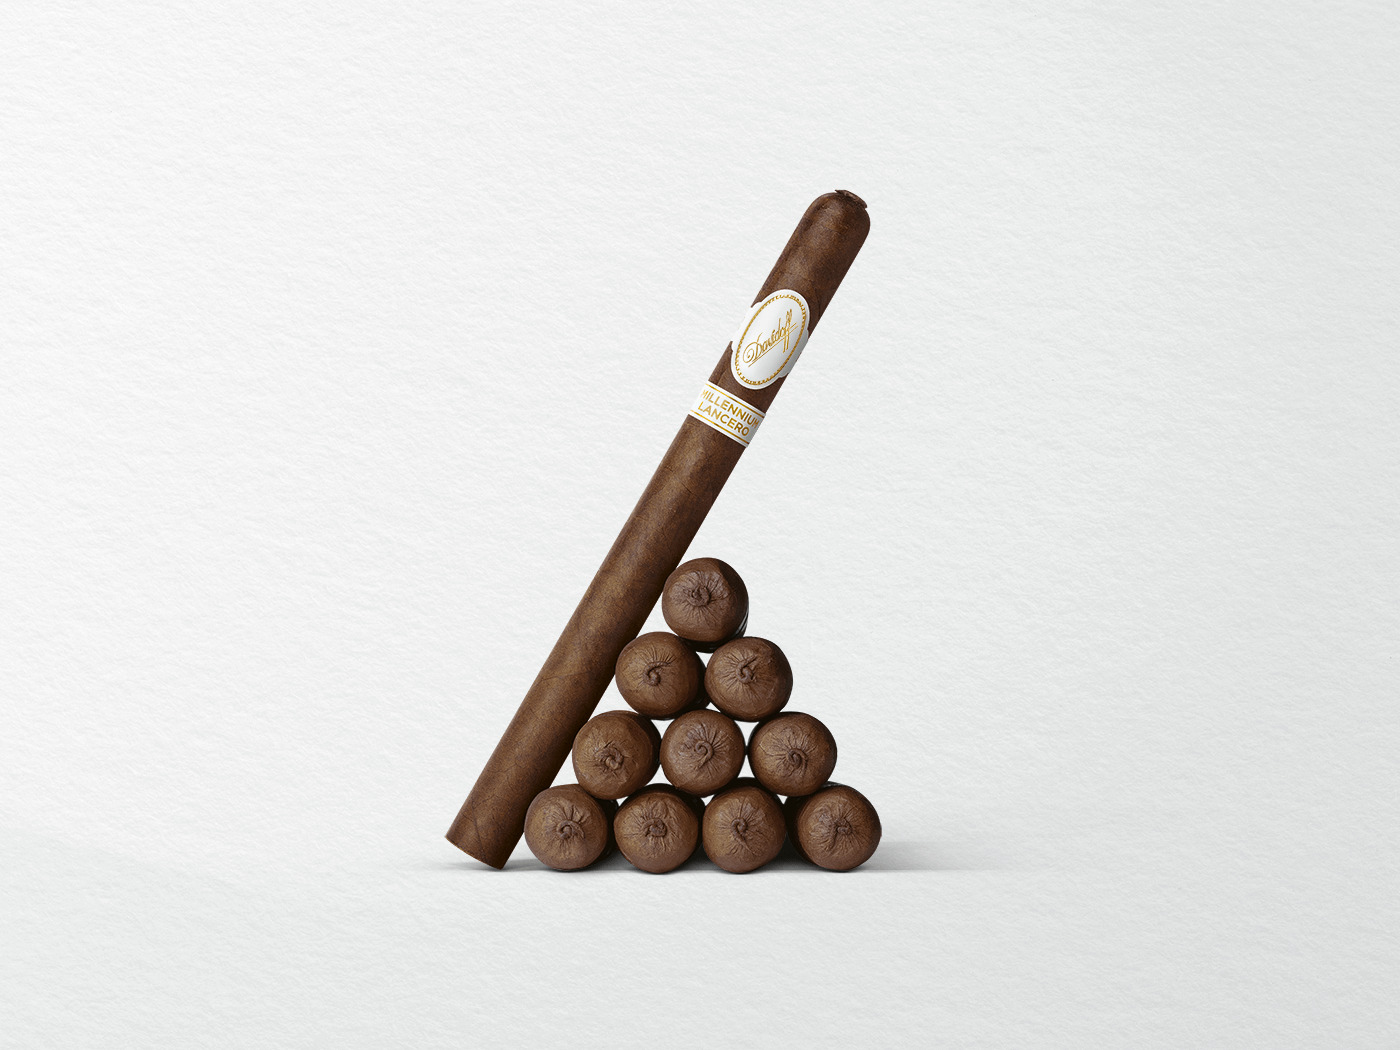 10 Zigarren der Davidoff Millennium Lancero Limited Edition Collection dreiecksförmig angeordnet, mit einer Zigarre dagegen lehnend. 